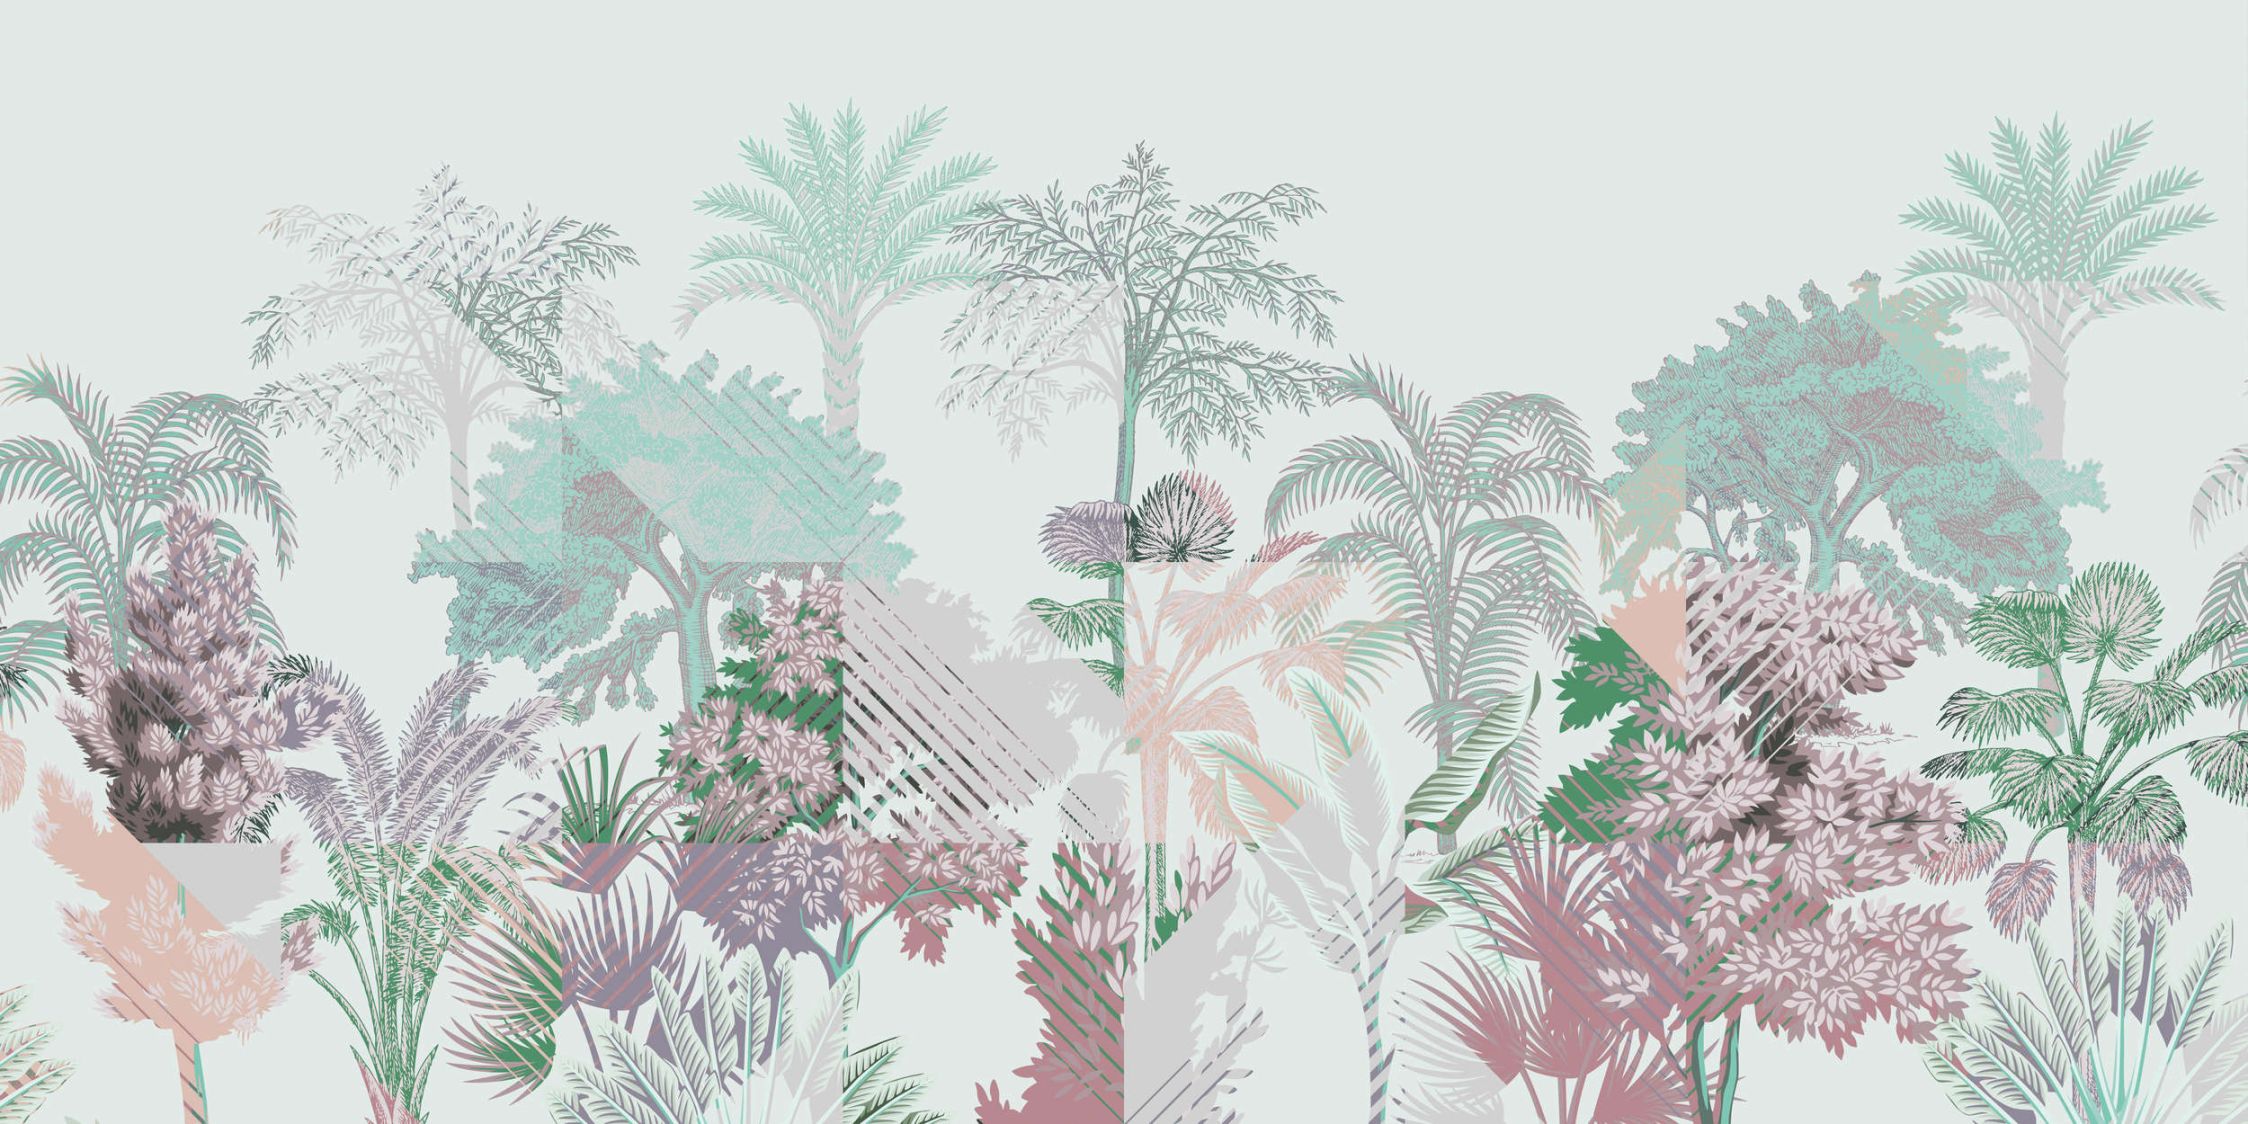             Digital behang »esplanade 1« - Jungle patchwork met struiken - Groen, Roze | Mat, Glad niet-geweven stof
        